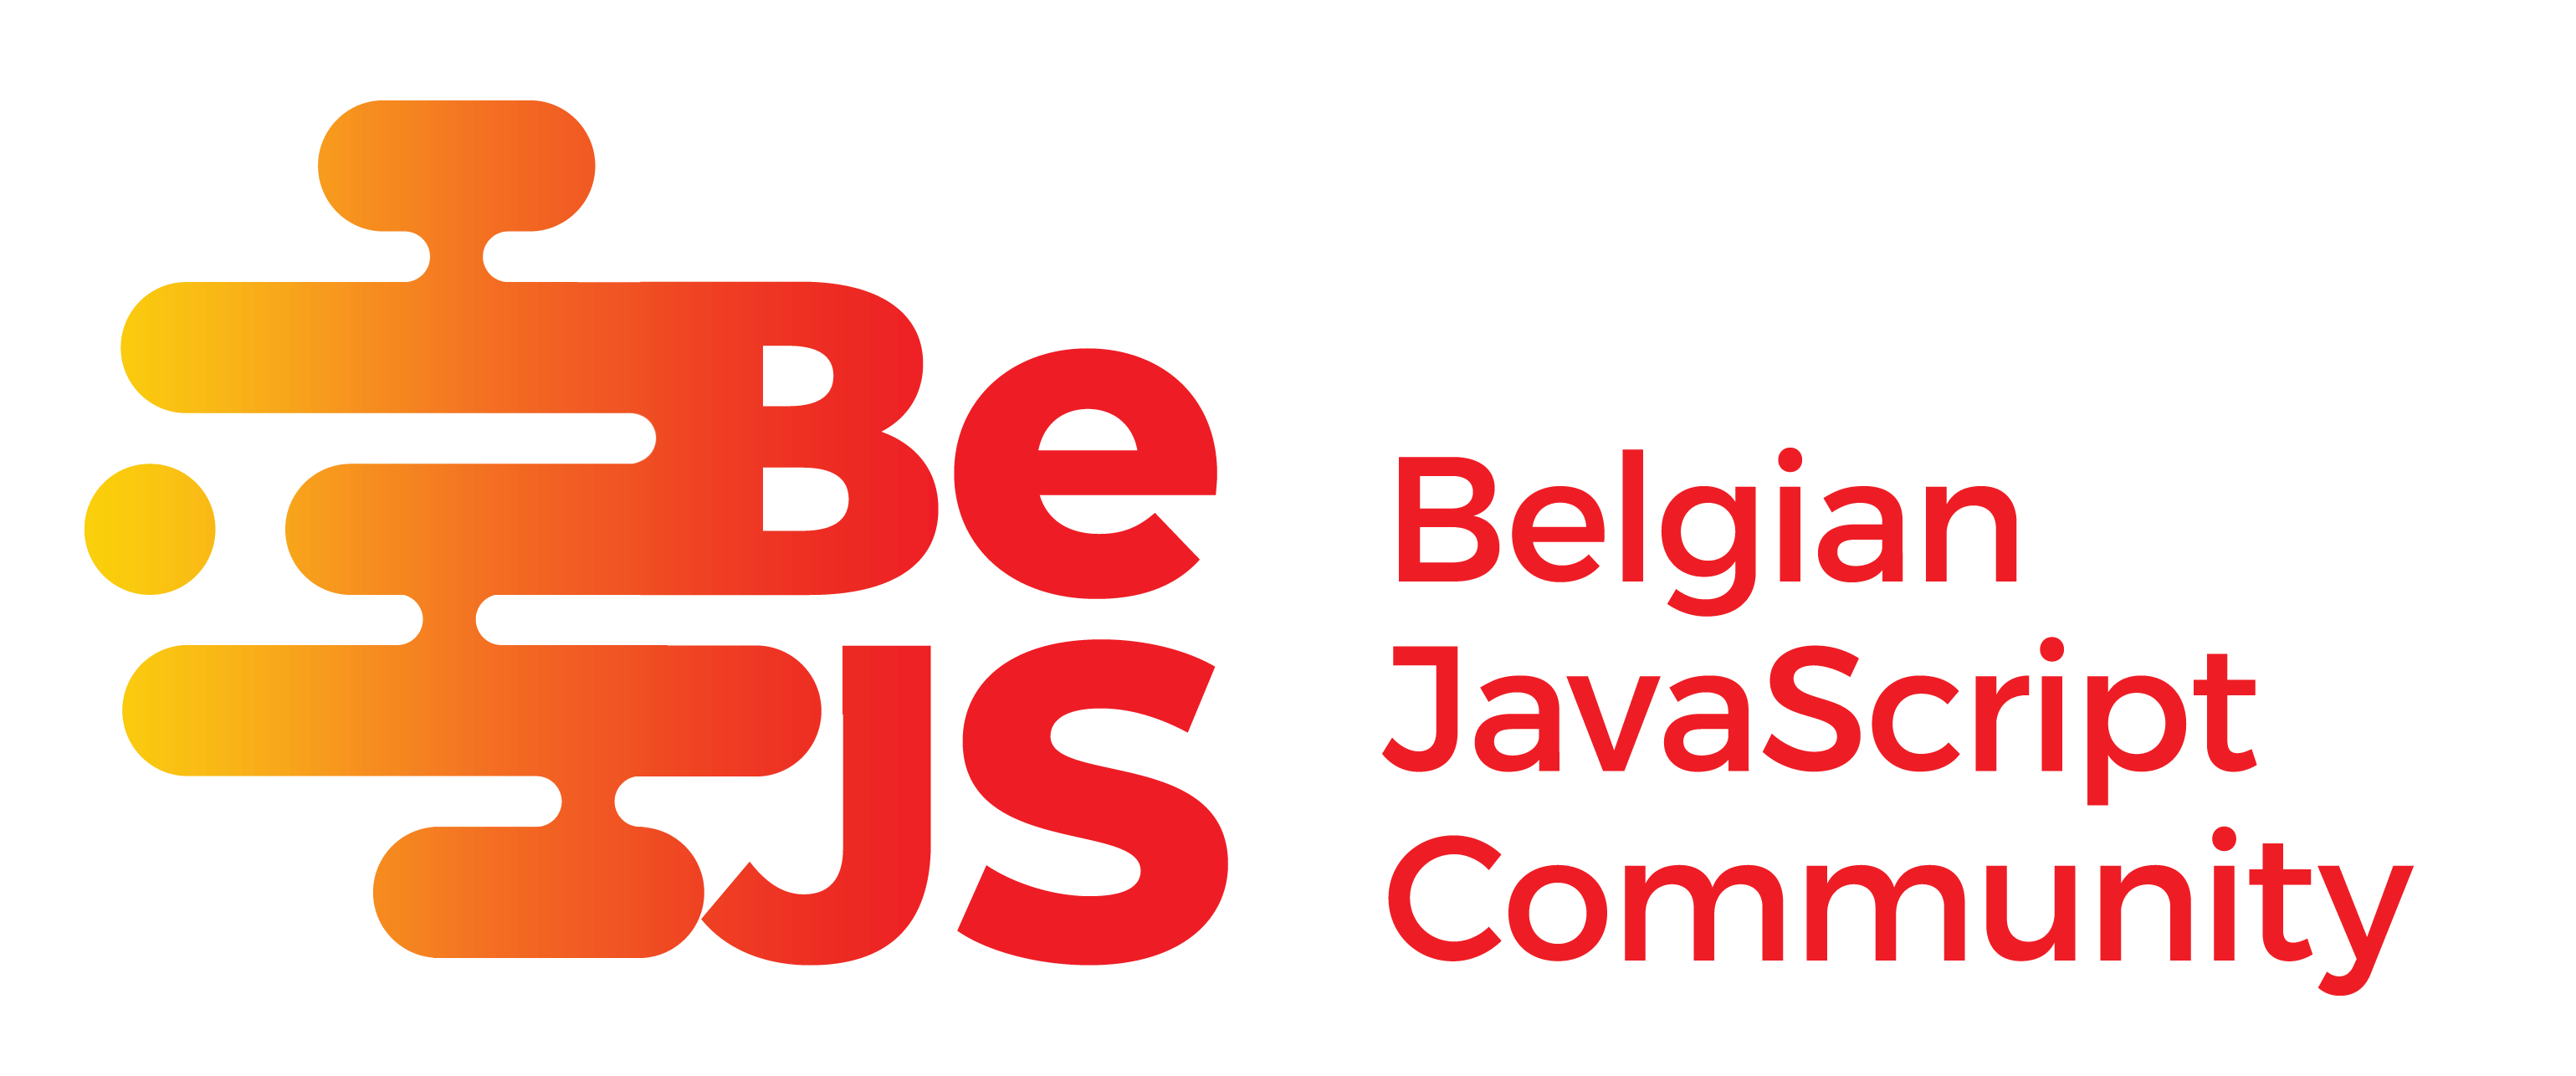 BEJS Community